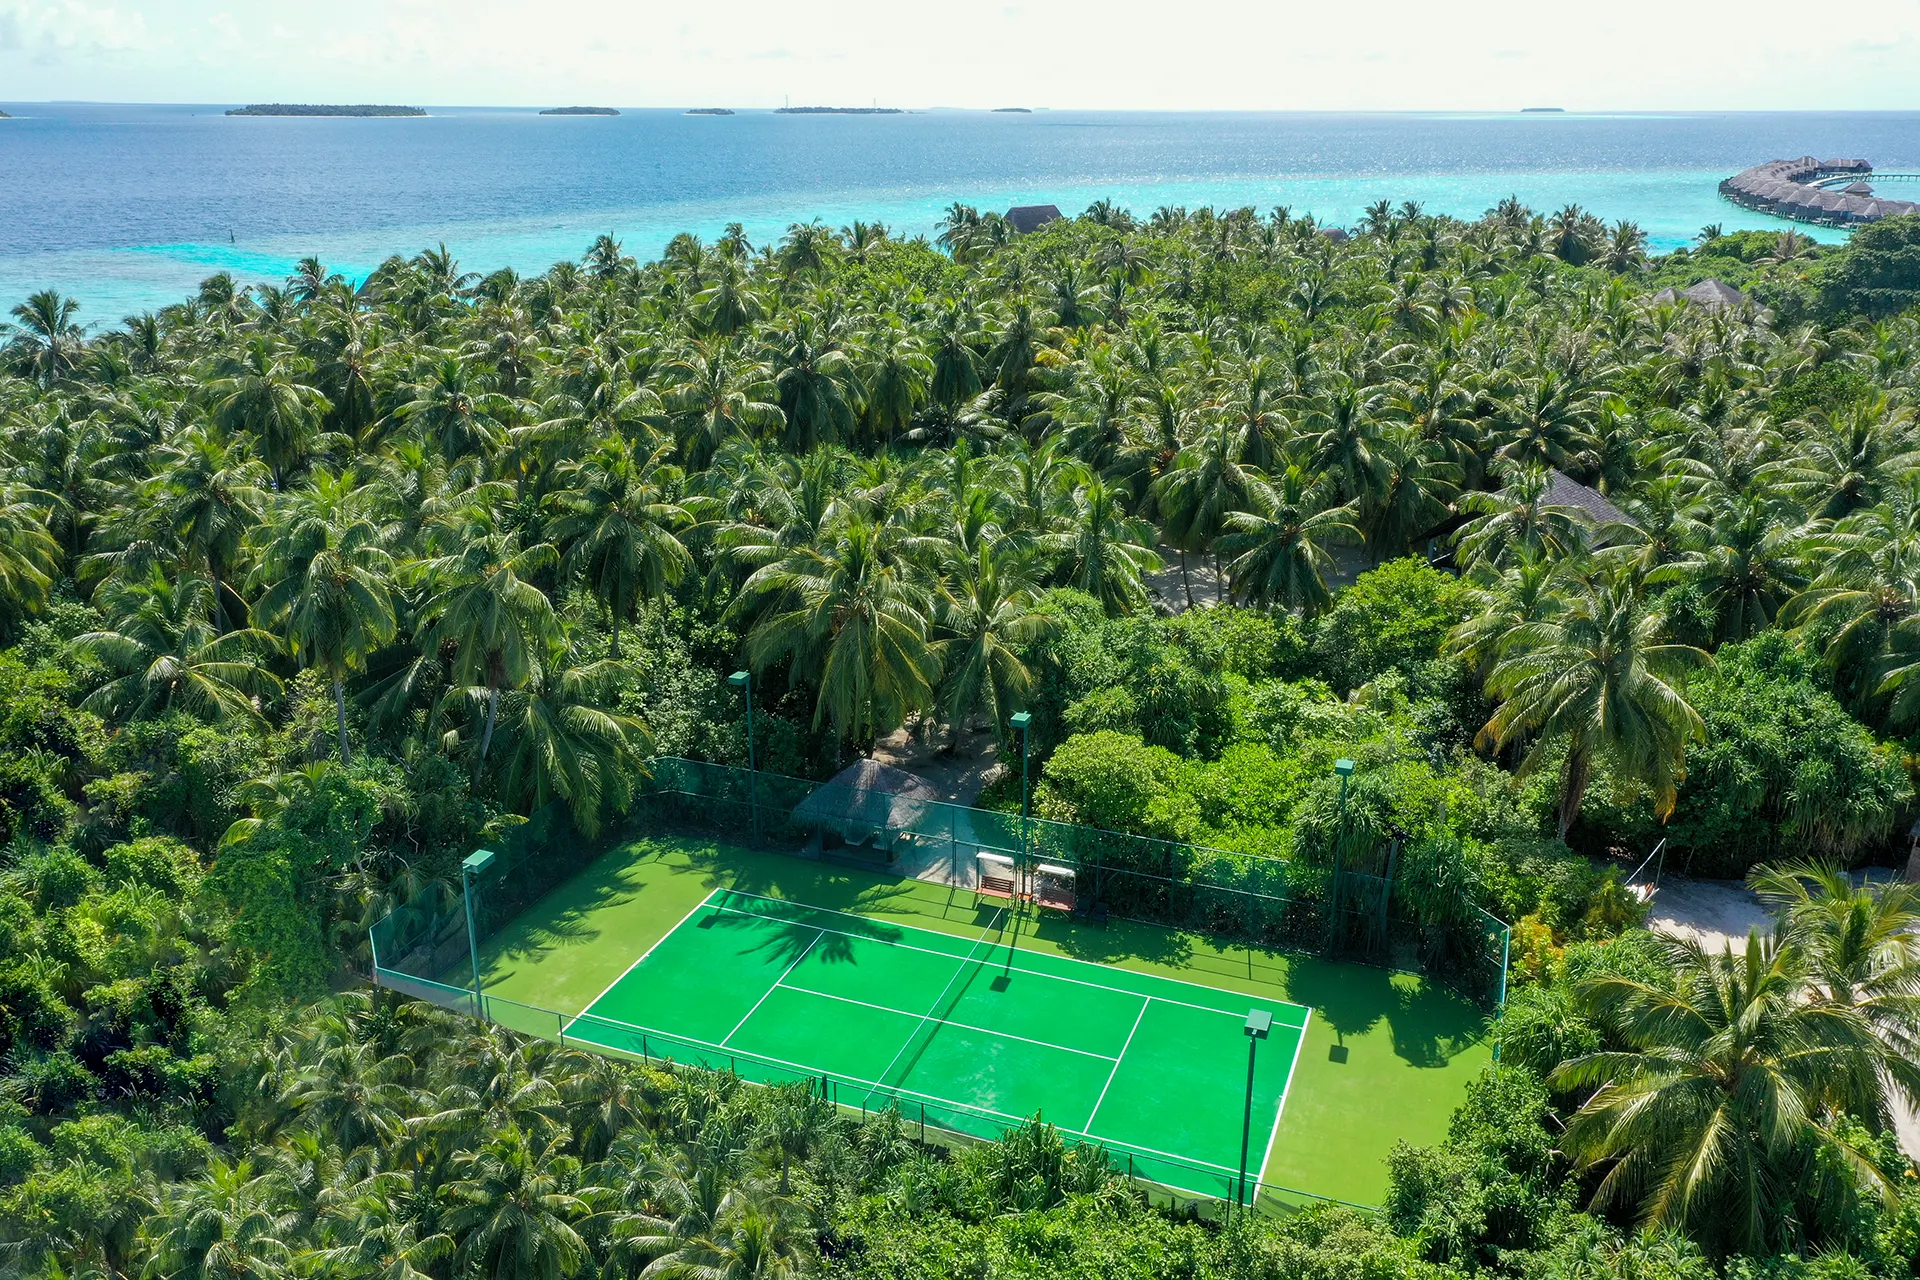 Tennisplatz zwischen vielen Palmen